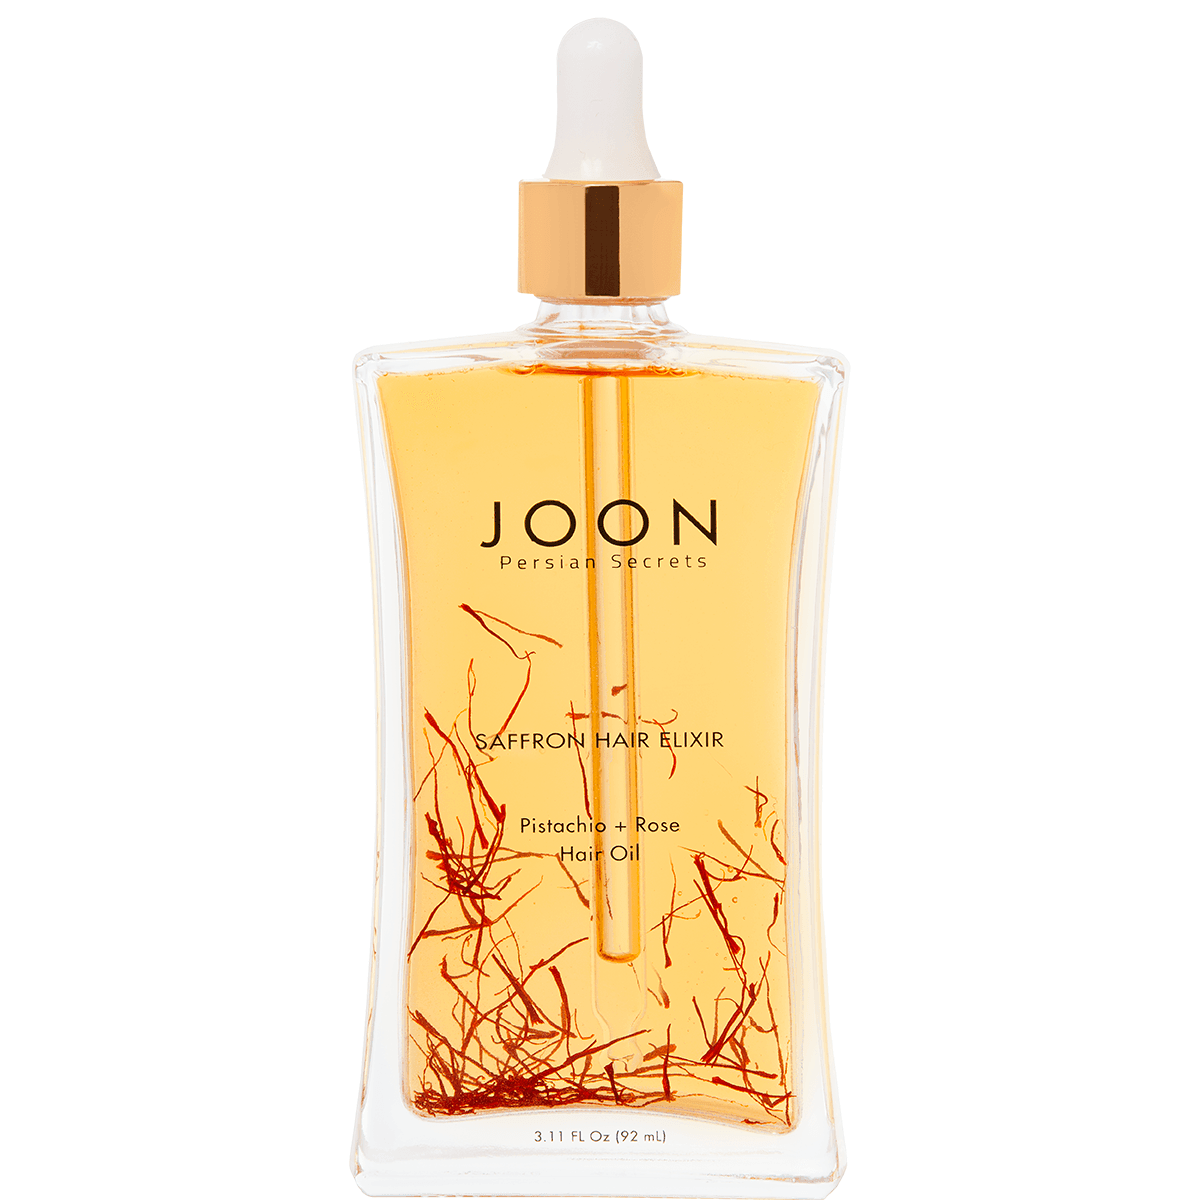 Saffron Hair Elixir Oil 3.11 oz - Joon Haircare